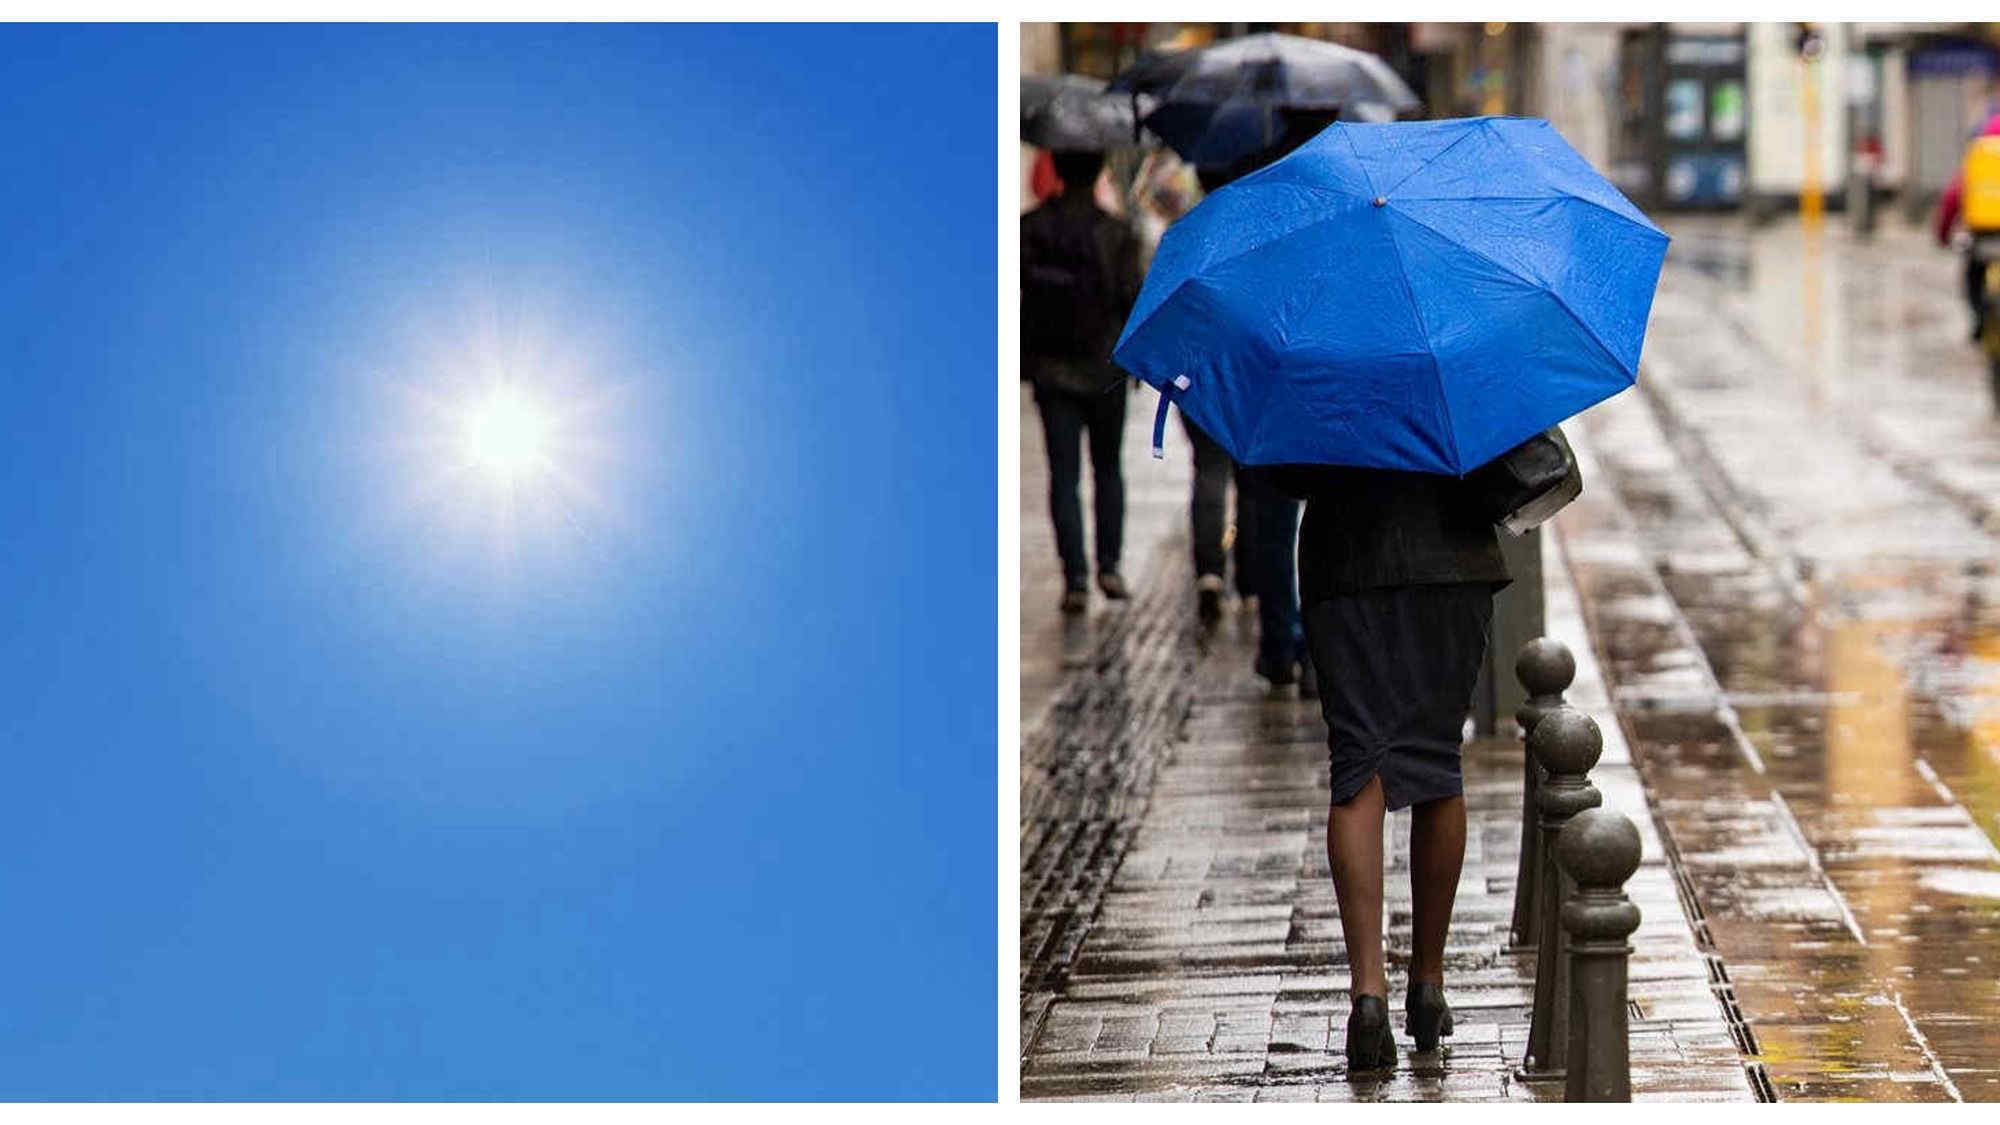 Meteo prossimi giorni in Italia: ancora tempo instabile con piogge e rovesci?